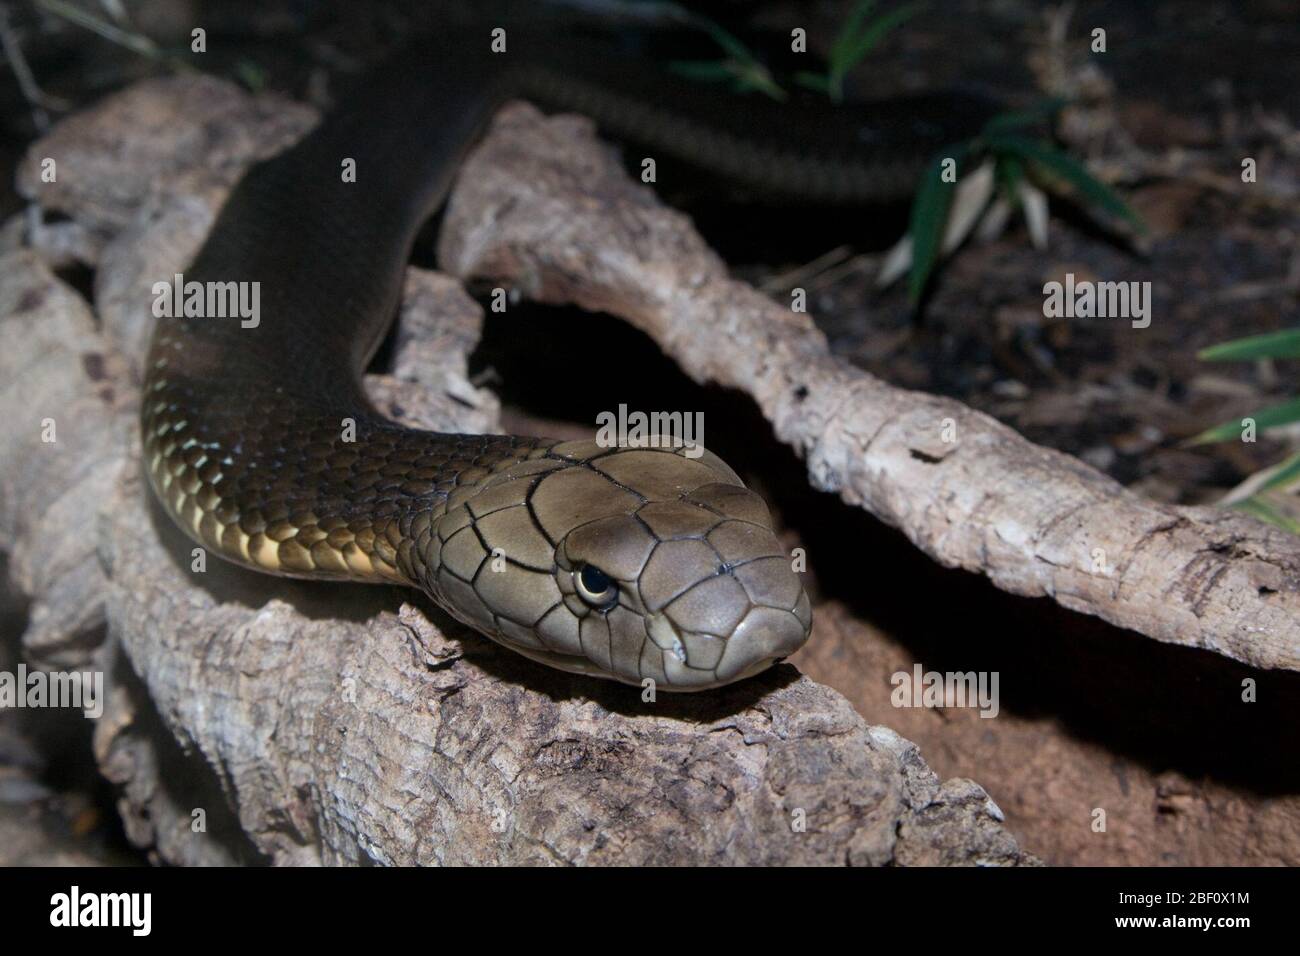 Re Cobra. Specie: hannah,genere: Ophiophagus,Famiglia: Elapidae,Ordine: SQUAMATA,Classe: Reptilia,Phylum: Chordata,Regno: Animalia,Rettile,Snake Foto Stock